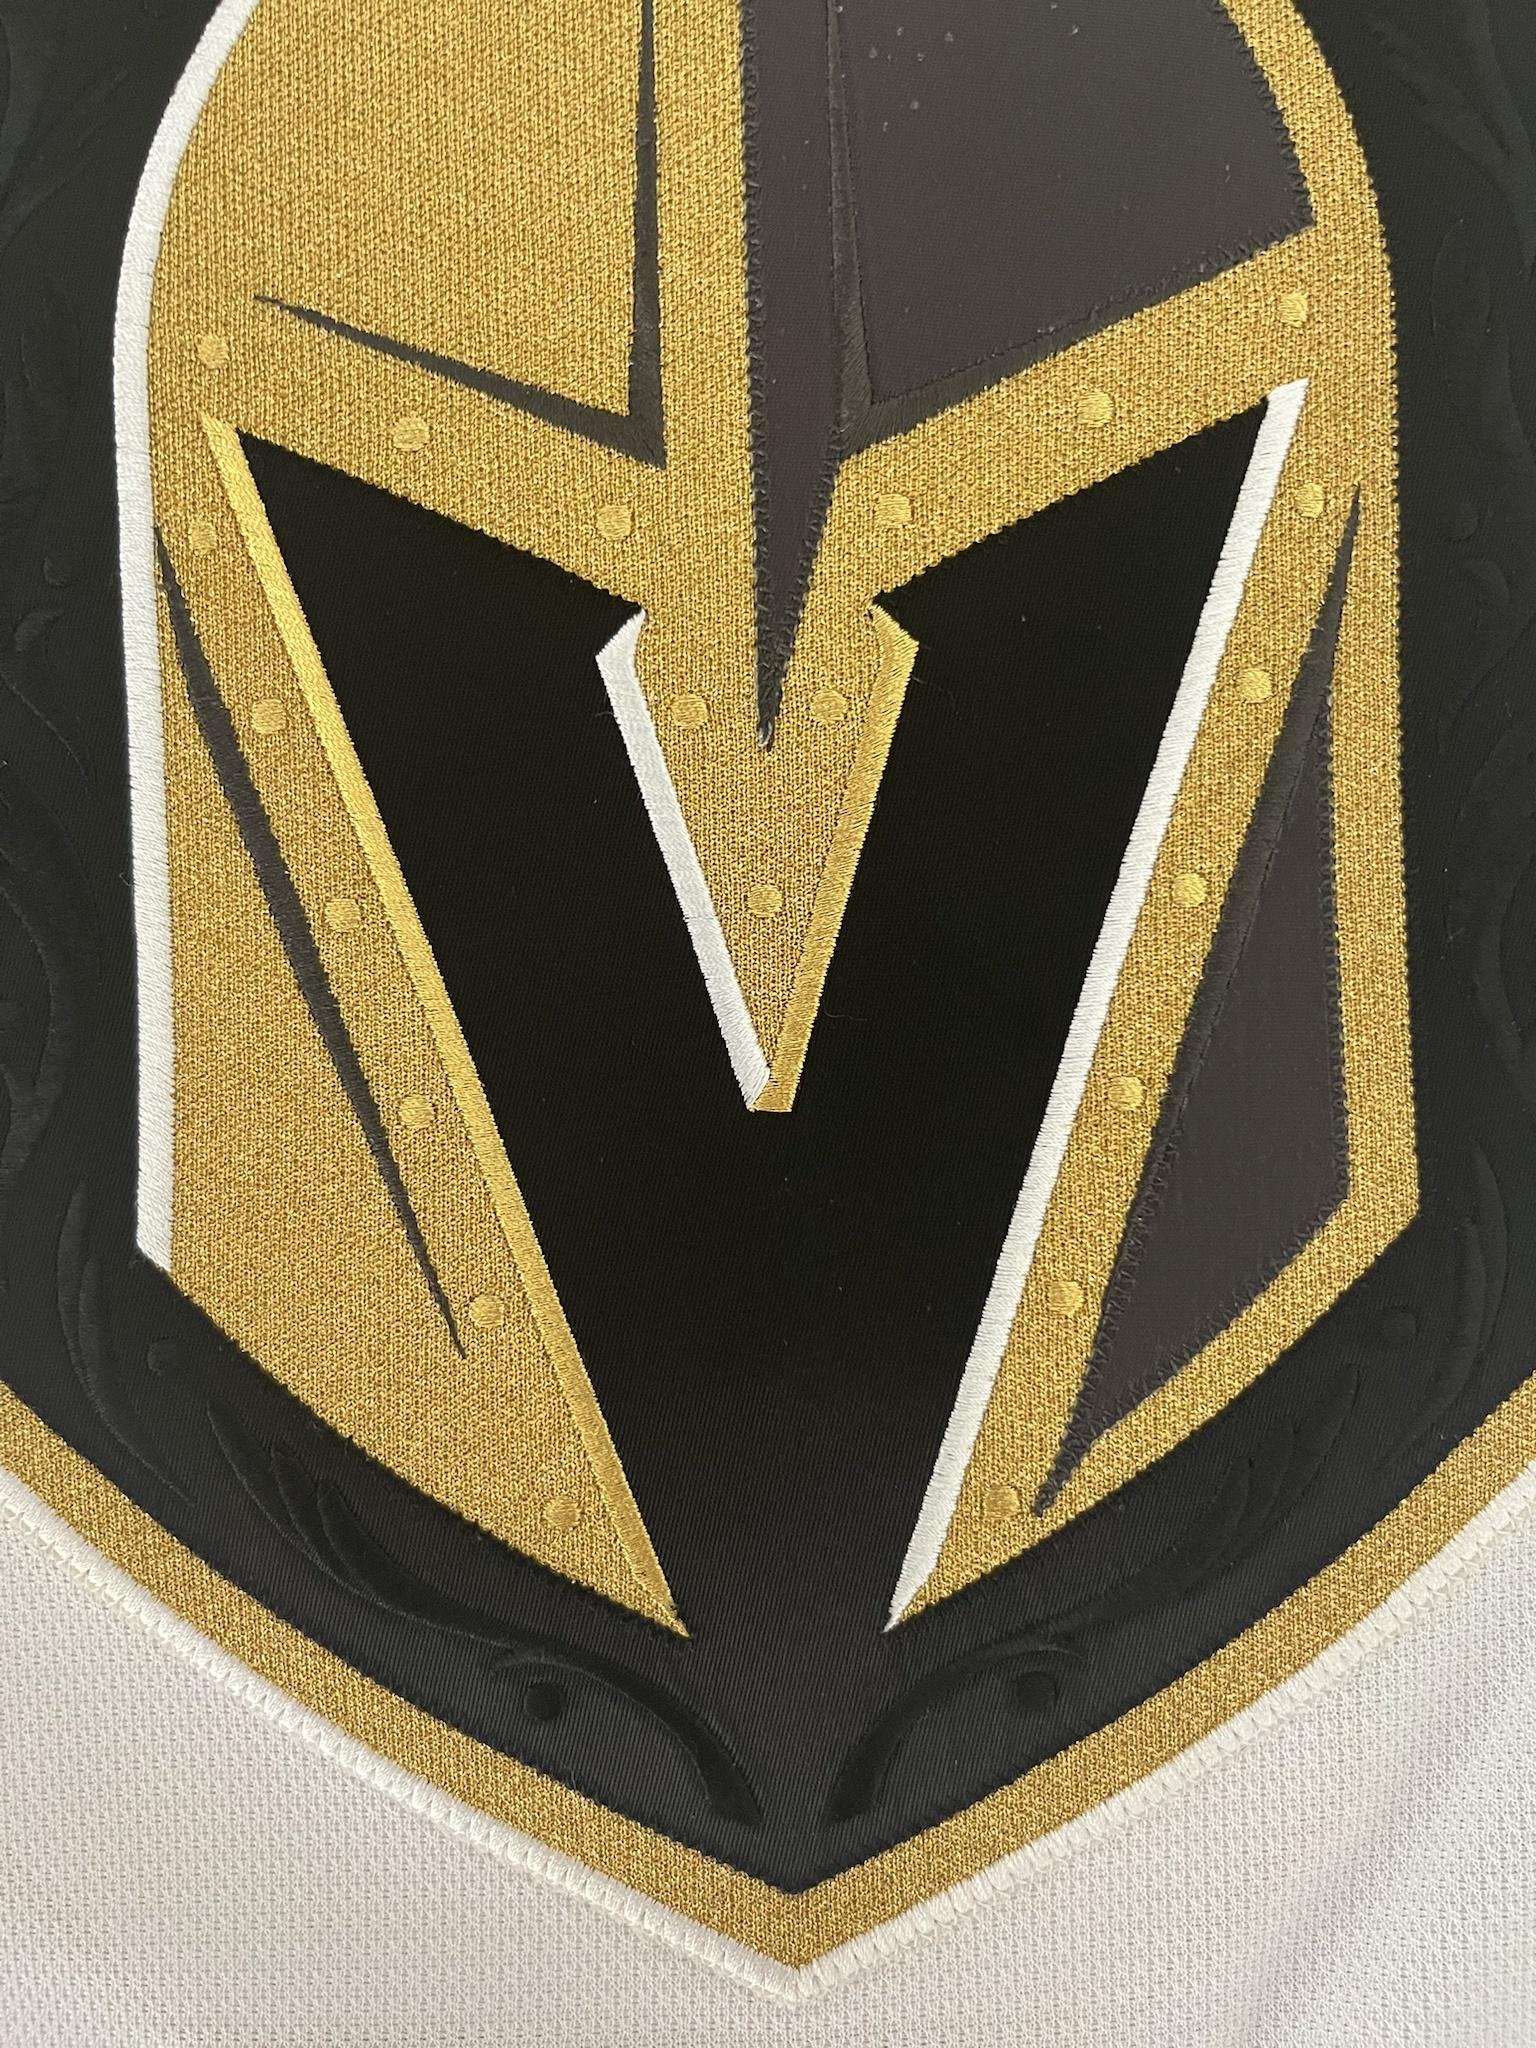 Deryk Engelland 2017-2018 Vegas Golden Knights White Set 2 Game Worn Jersey  — Desert Hockey Threads